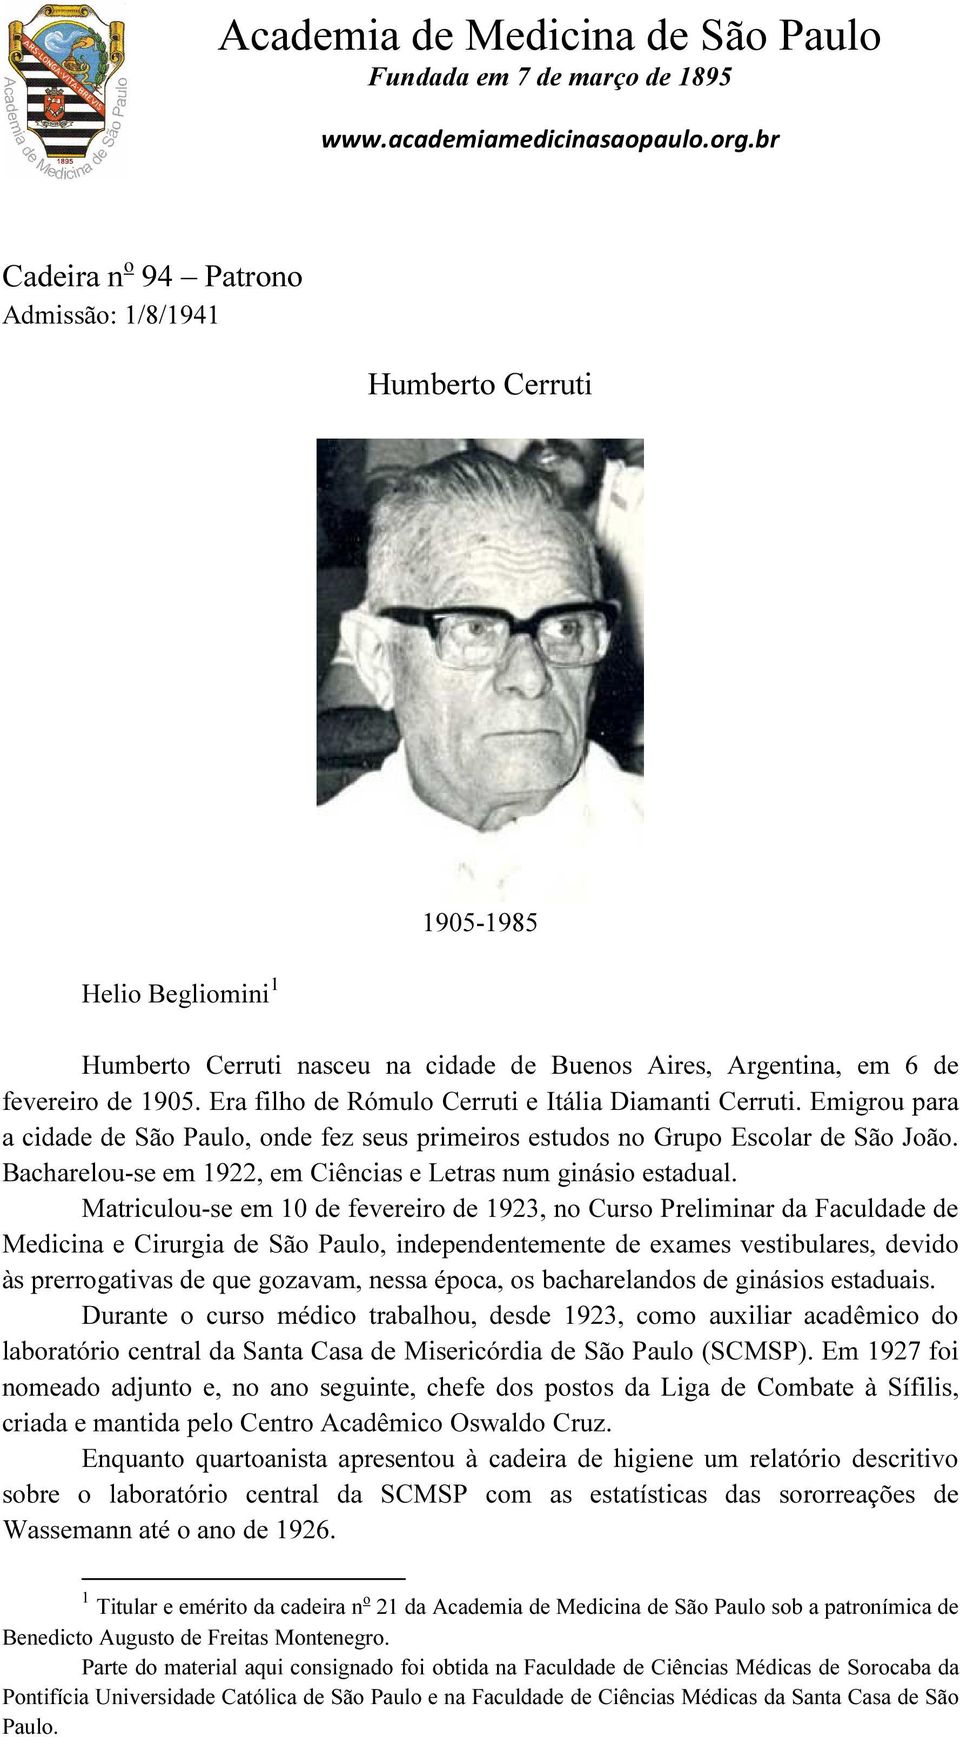 Era filho de Rómulo Cerruti e Itália Diamanti Cerruti. Emigrou para a cidade de São Paulo, onde fez seus primeiros estudos no Grupo Escolar de São João.